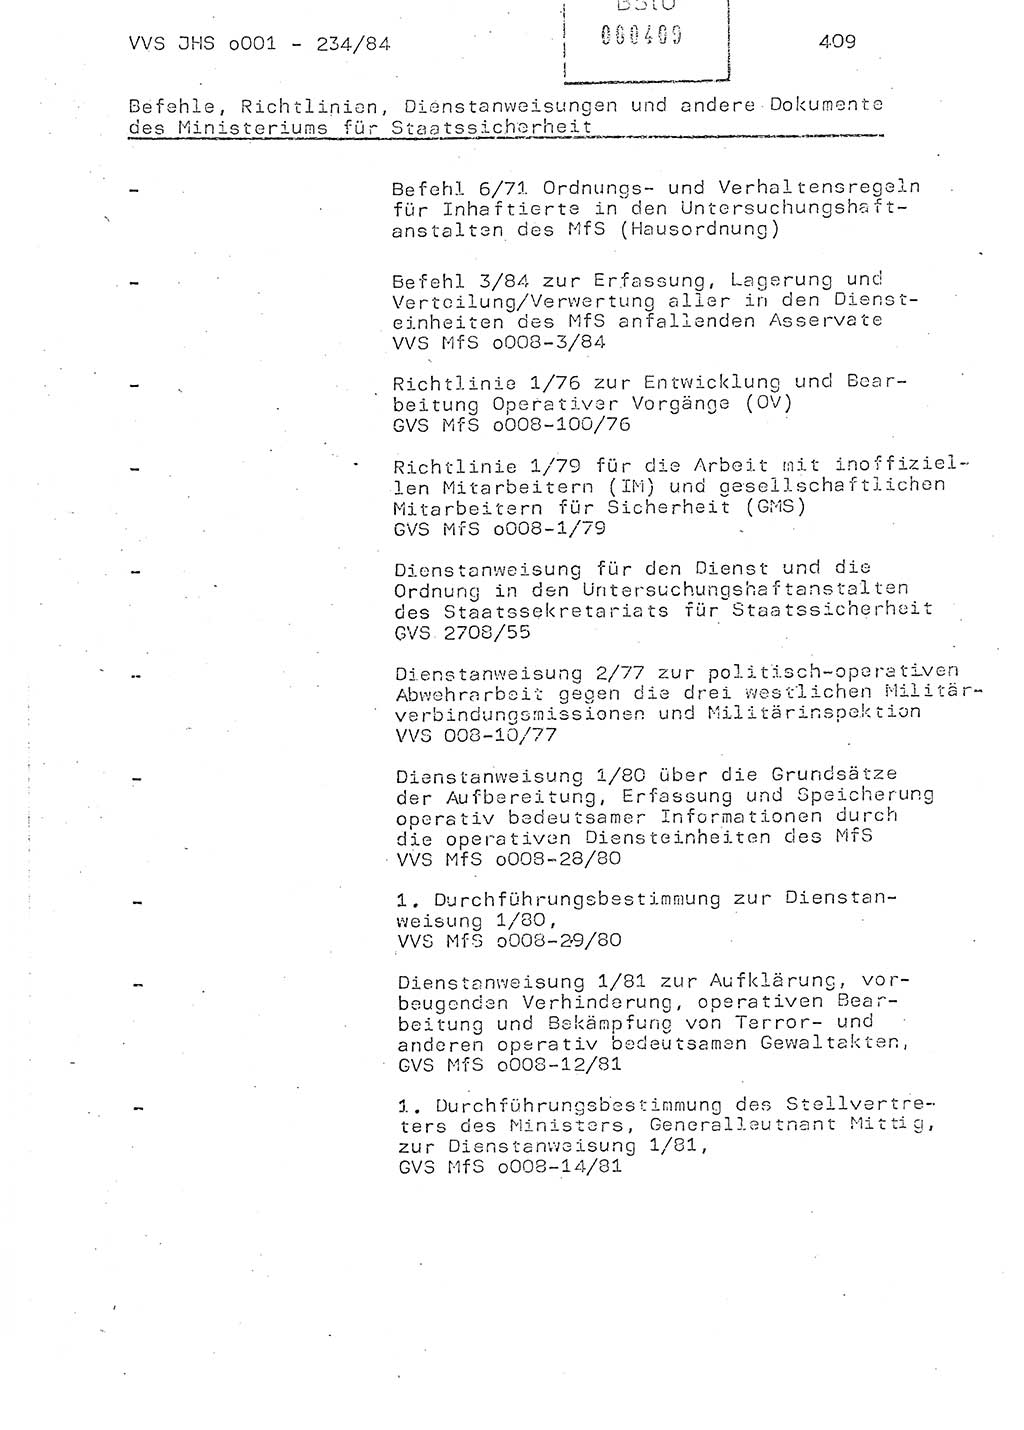 Dissertation Oberst Siegfried Rataizick (Abt. ⅩⅣ), Oberstleutnant Volkmar Heinz (Abt. ⅩⅣ), Oberstleutnant Werner Stein (HA Ⅸ), Hauptmann Heinz Conrad (JHS), Ministerium für Staatssicherheit (MfS) [Deutsche Demokratische Republik (DDR)], Juristische Hochschule (JHS), Vertrauliche Verschlußsache (VVS) o001-234/84, Potsdam 1984, Seite 409 (Diss. MfS DDR JHS VVS o001-234/84 1984, S. 409)